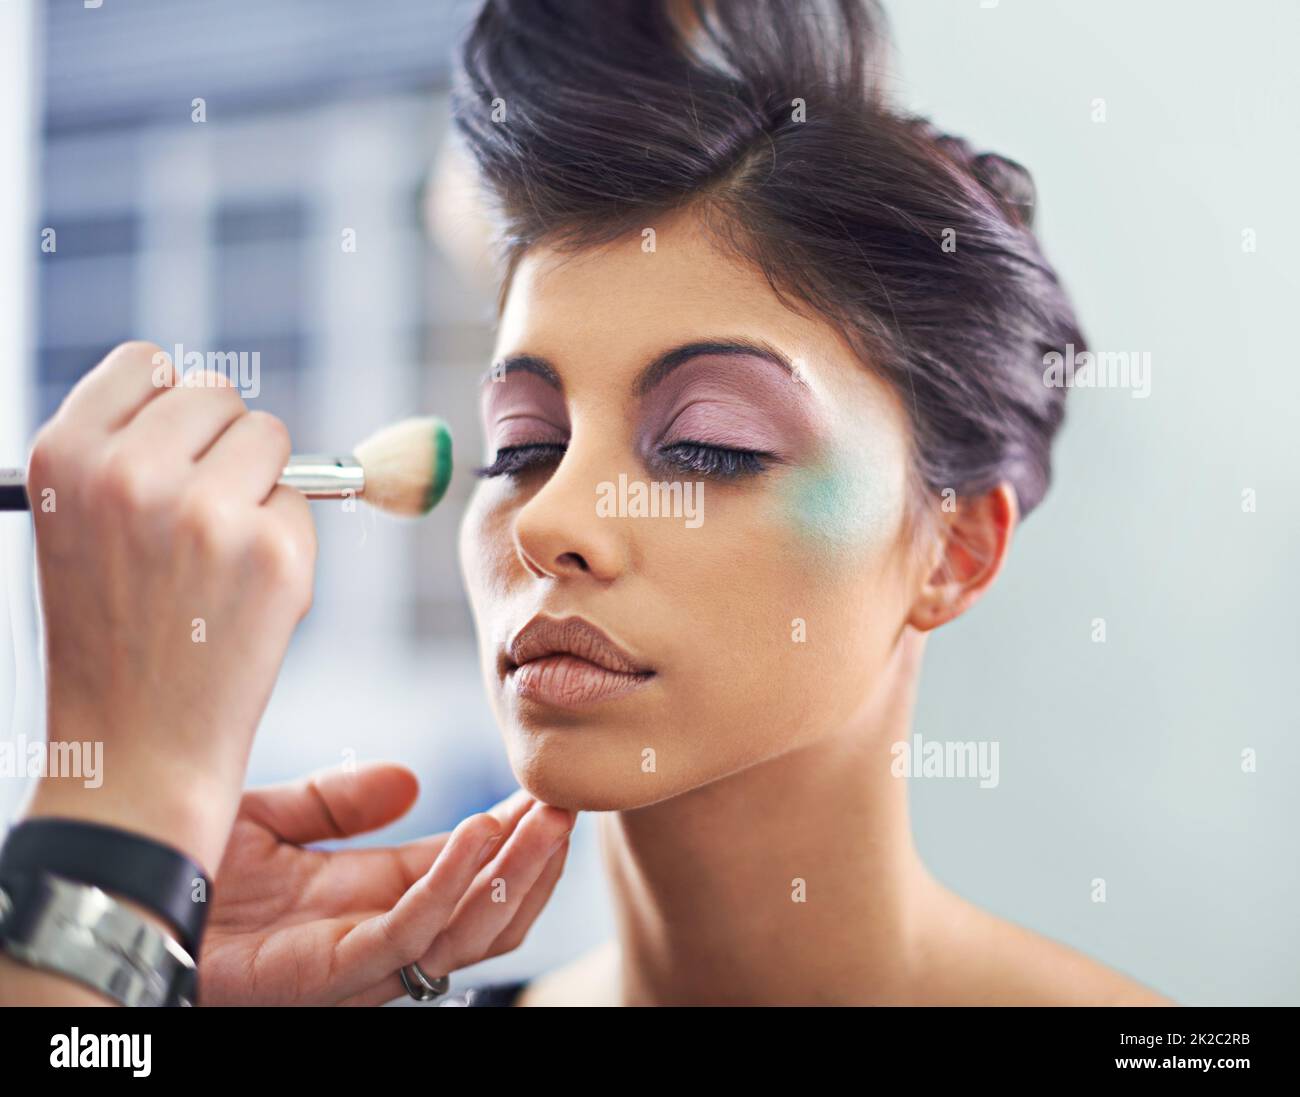 Ein Meisterwerk erschaffen. Eine junge Frau mit kosmetischen Verbesserungen, die Make-up aufgetragen hat. Stockfoto